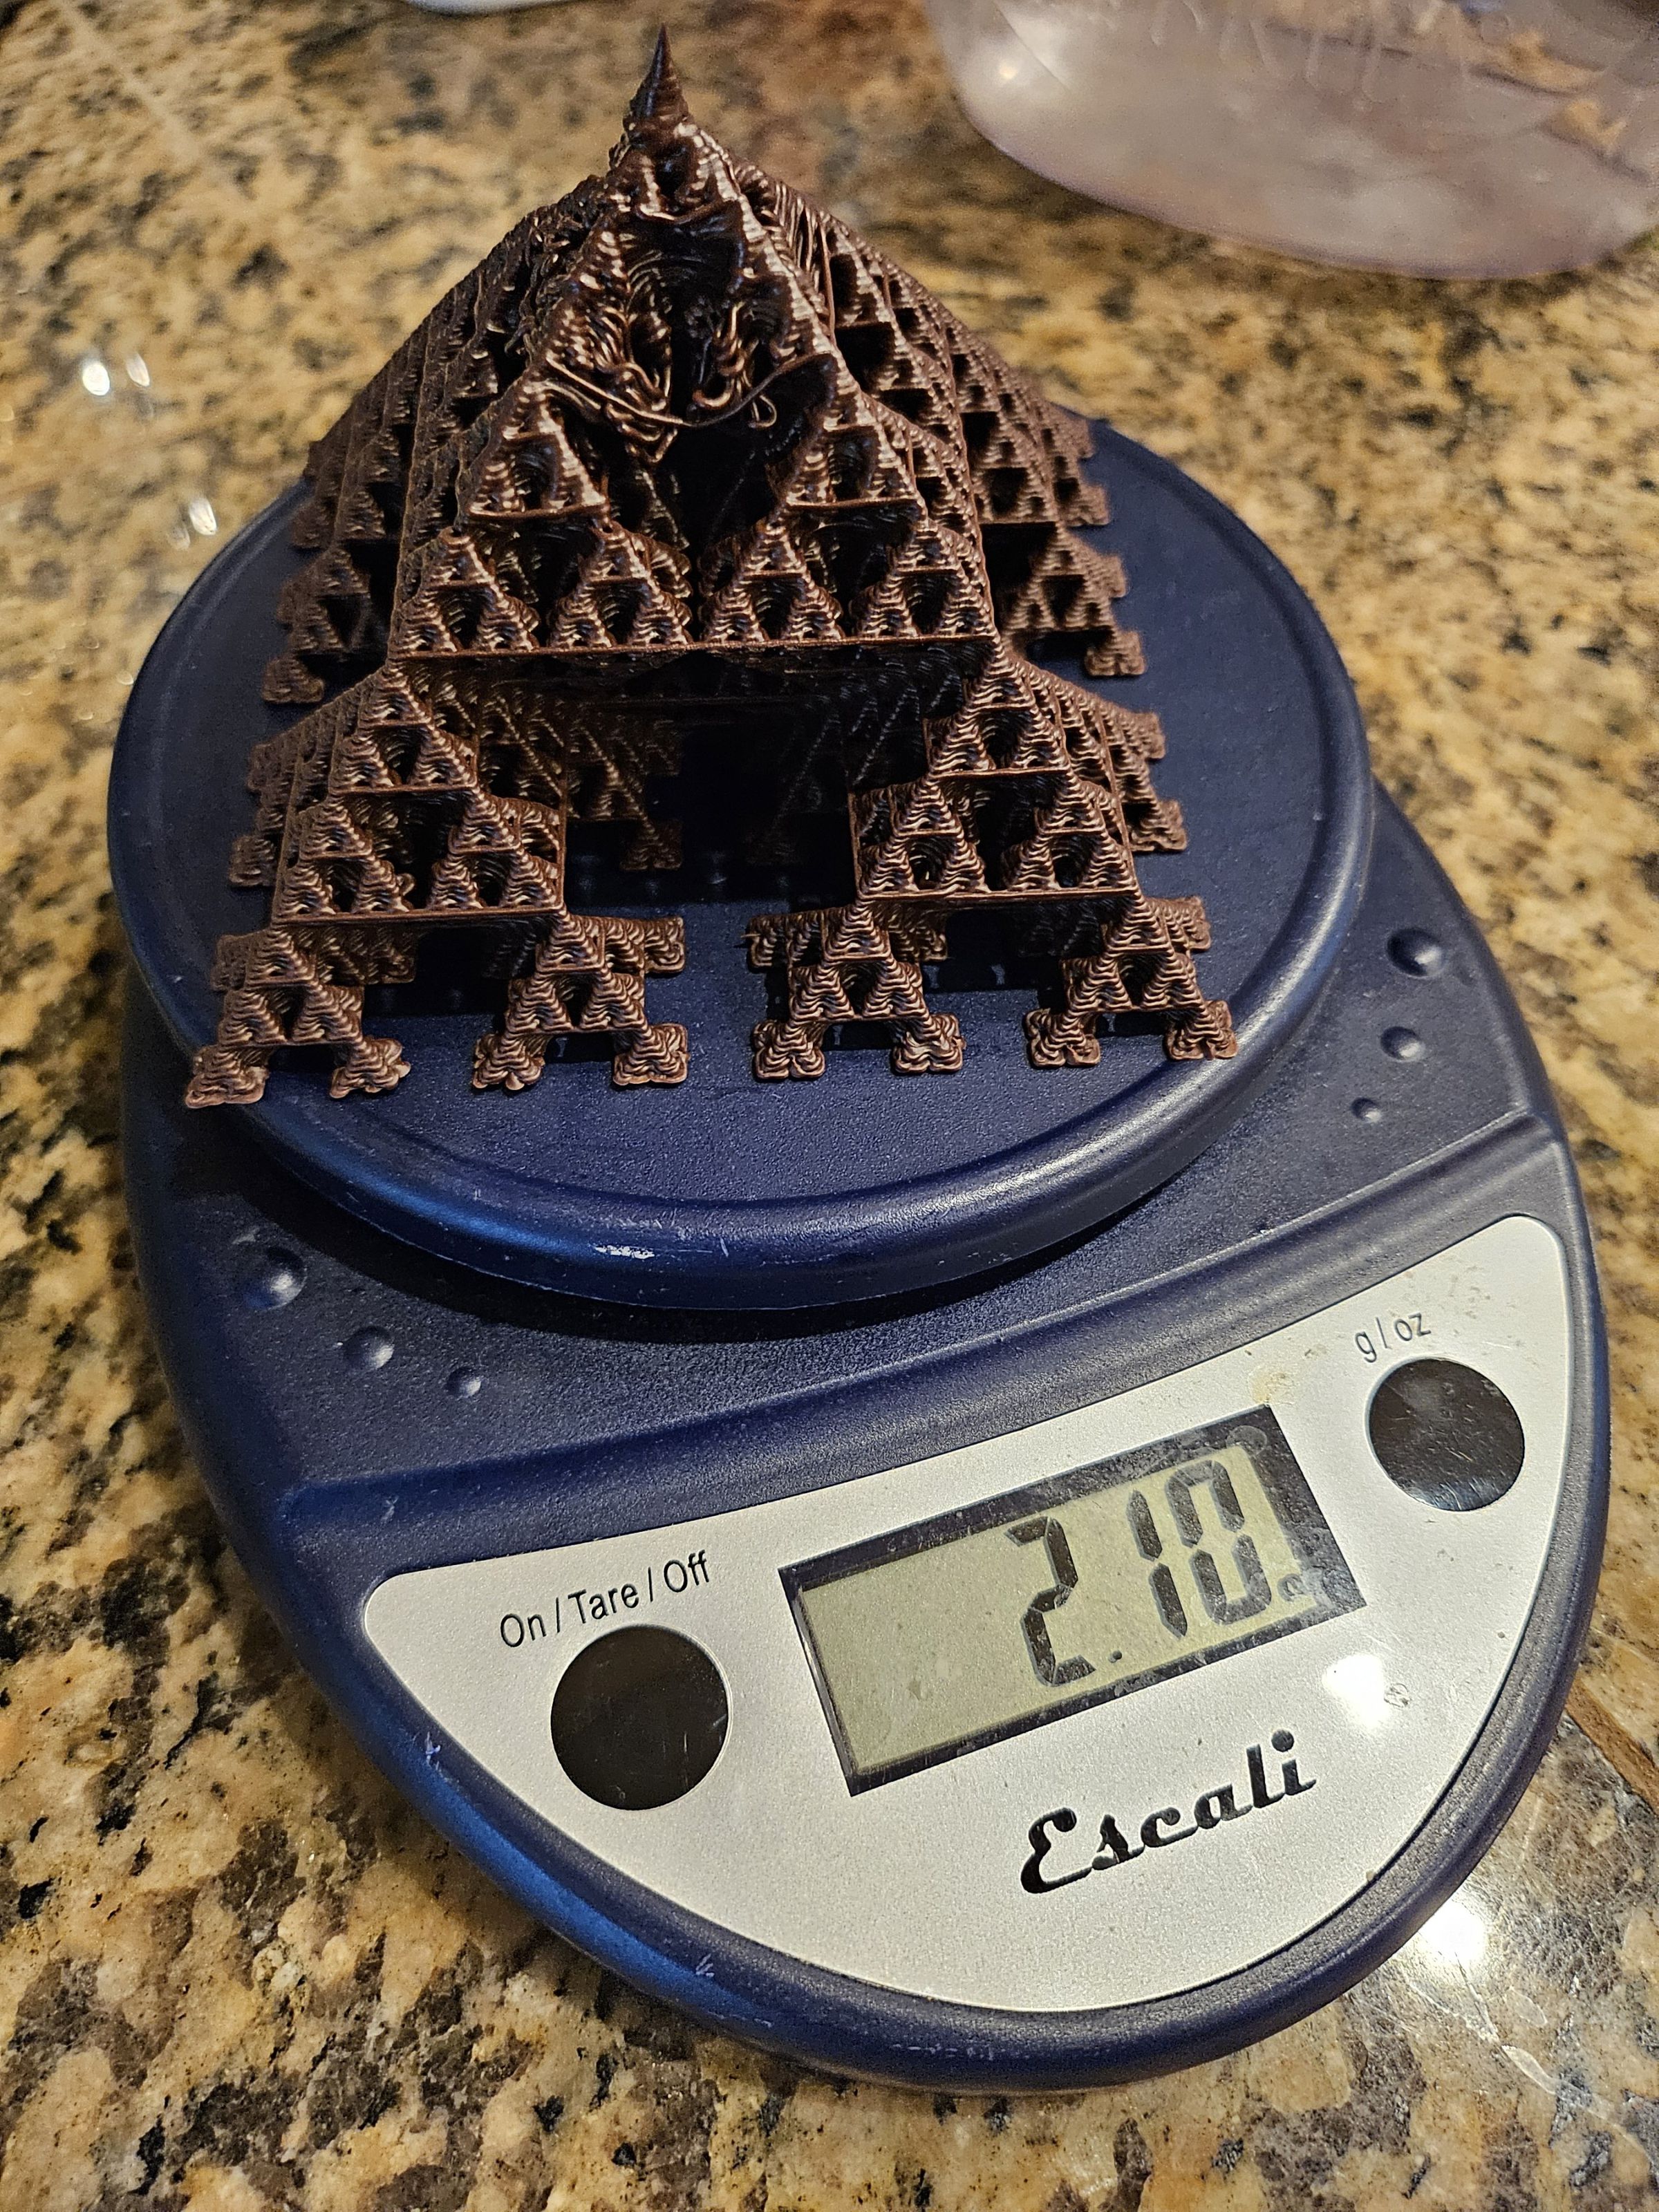 2.10 ounces of chocolate pyramids. 